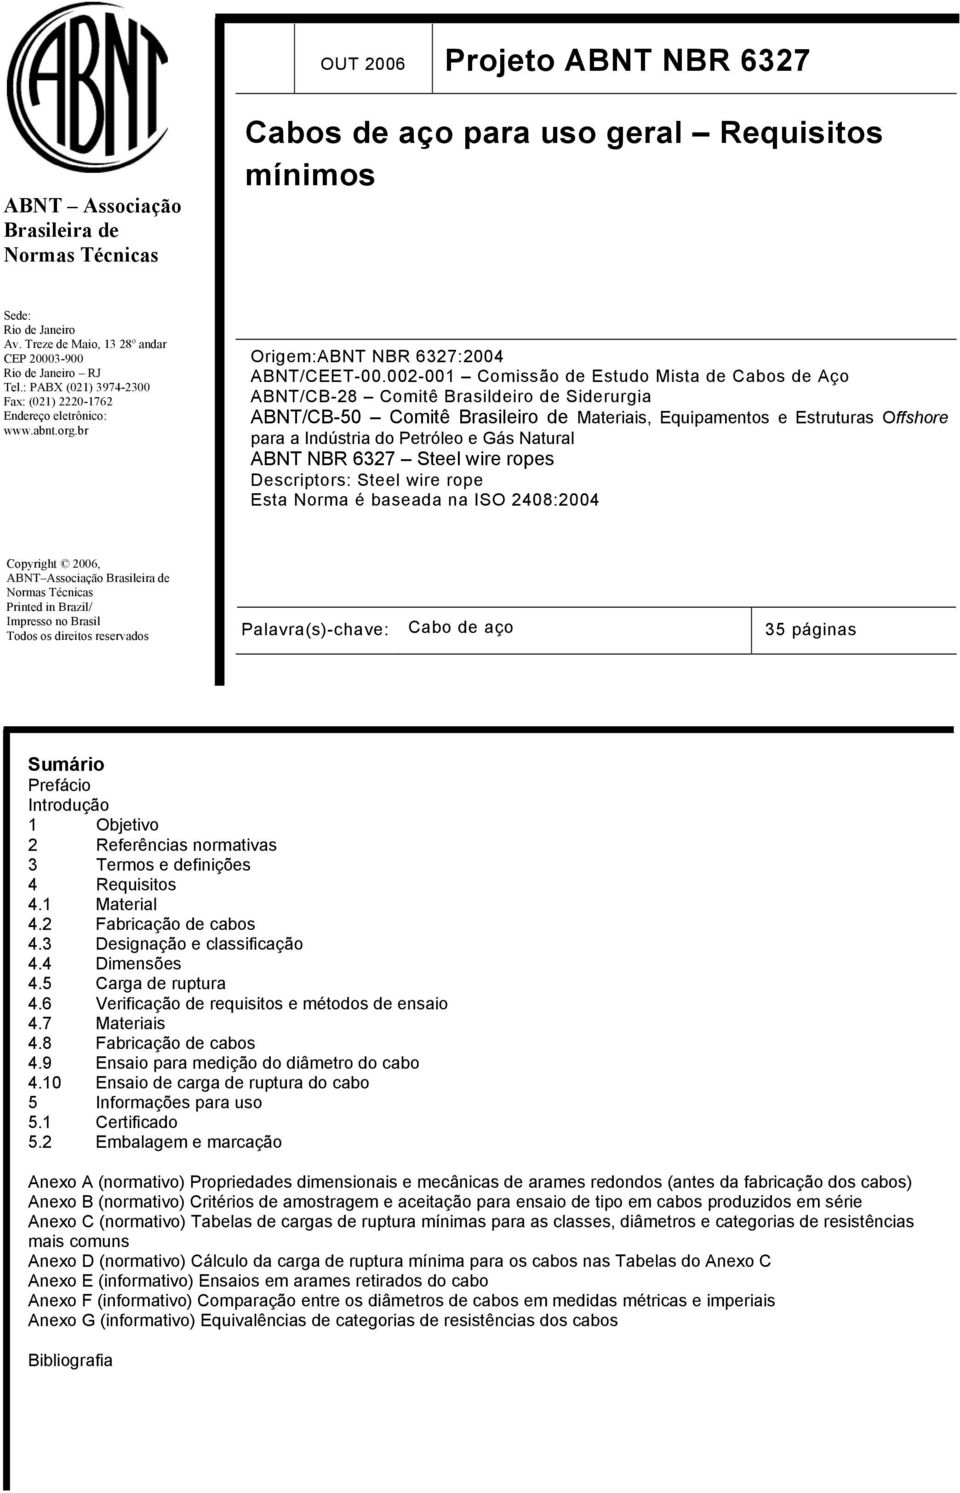 002-001 Comissão de Estudo Mista de Cabos de Aço ABNT/CB-28 Comitê Brasildeiro de Siderurgia ABNT/CB-50 Comitê Brasileiro de Materiais, Equipamentos e Estruturas Offshore para a Indústria do Petróleo